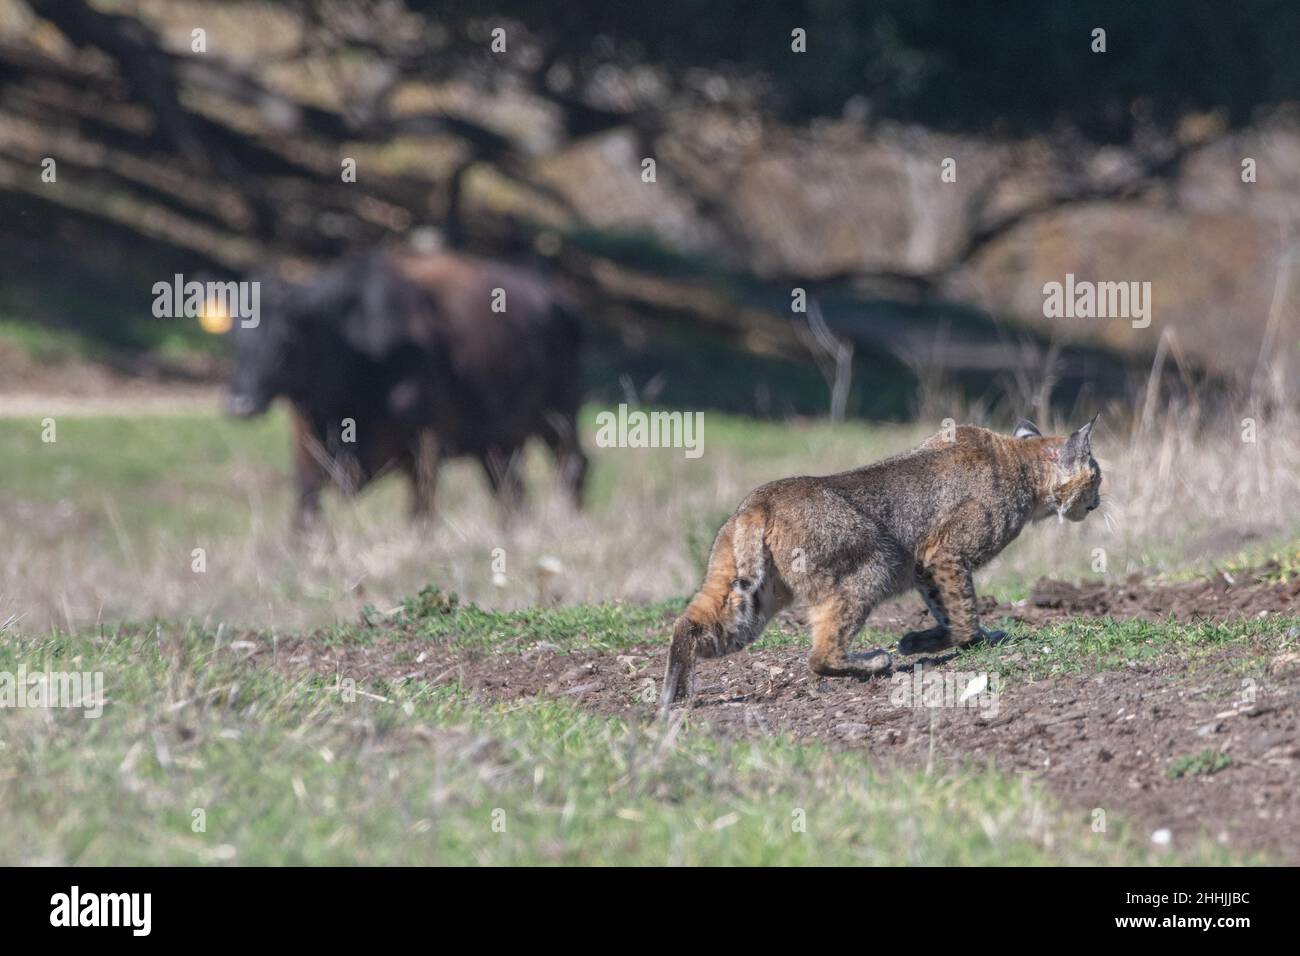 Un lynx roux (Lynx rufus) se promette devant une vache qui tombe en arrière-plan, les 2 partagent un habitat et interagissent rarement en Californie, aux États-Unis. Banque D'Images